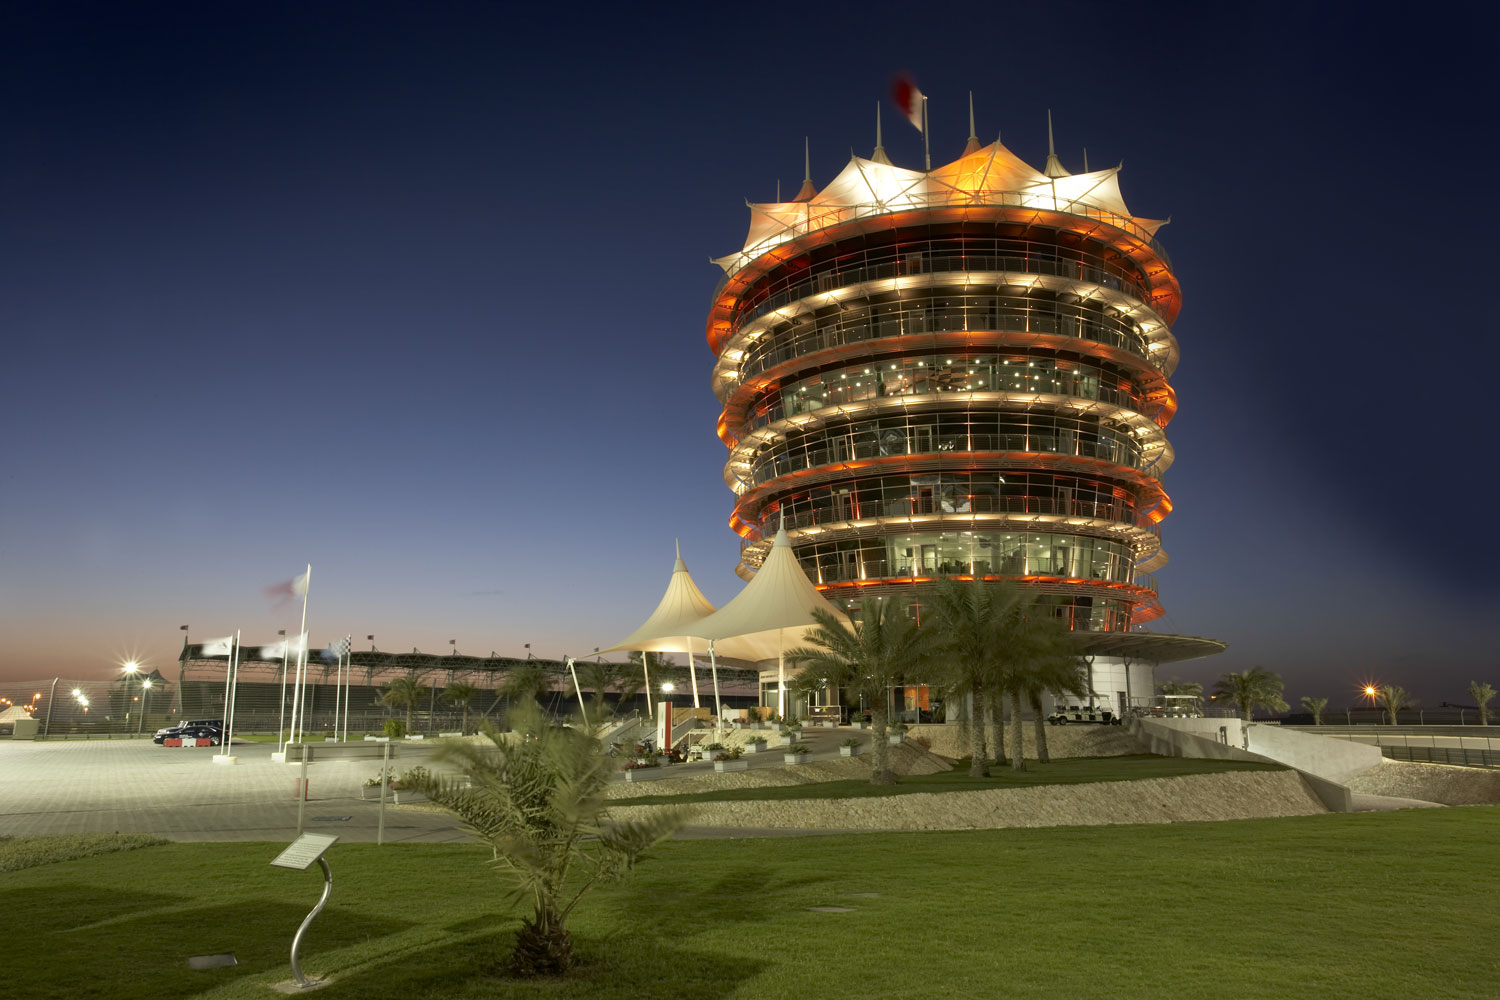 f1 bahrain circuit